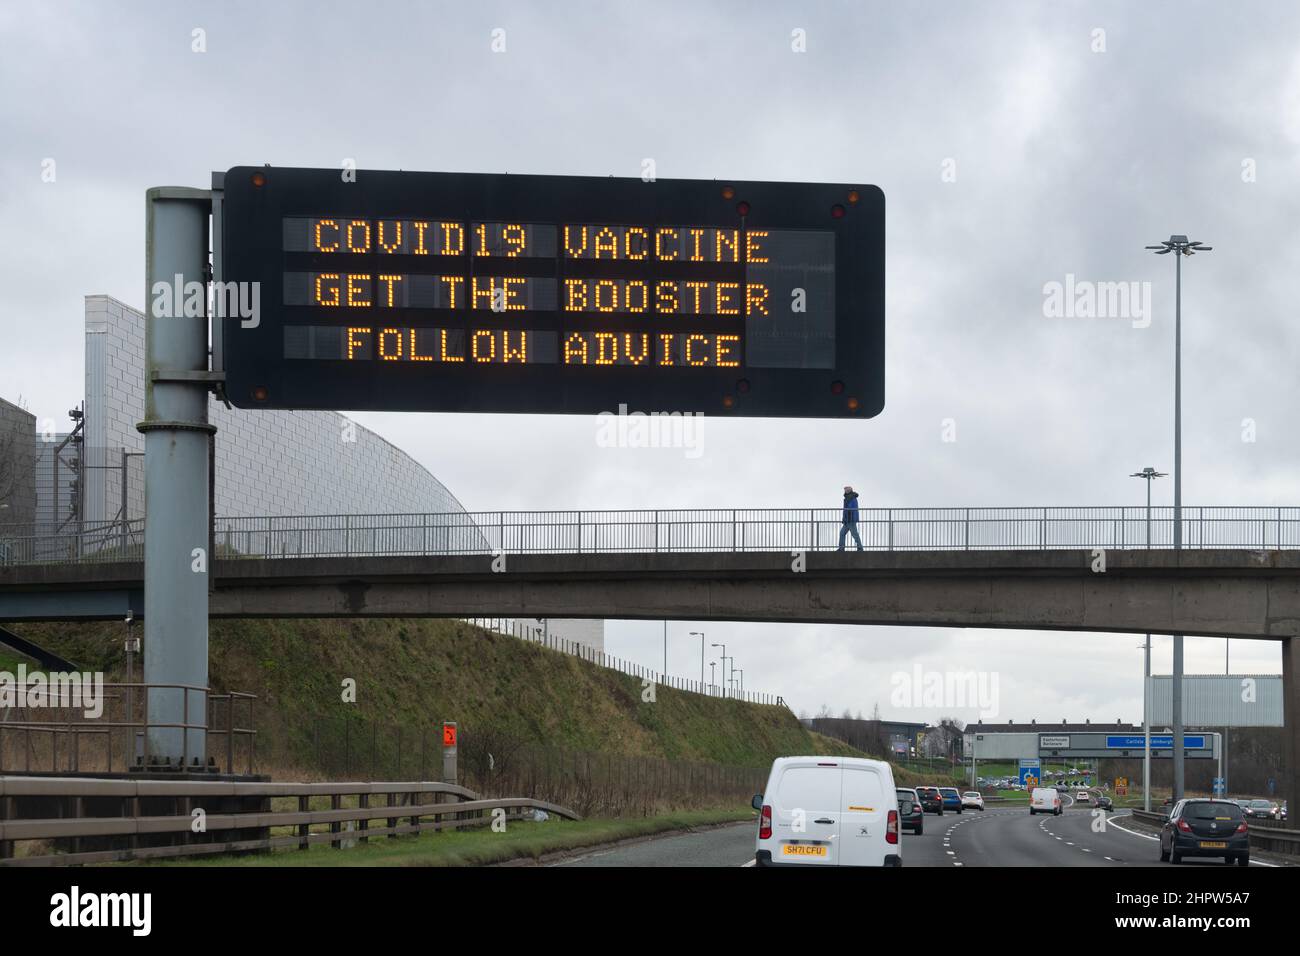 Vaccin de rappel Covid - vaccin covid19 Obtenez le rappel Suivez le panneau géant de l'autoroute, Glasgow, Écosse, Royaume-Uni Banque D'Images